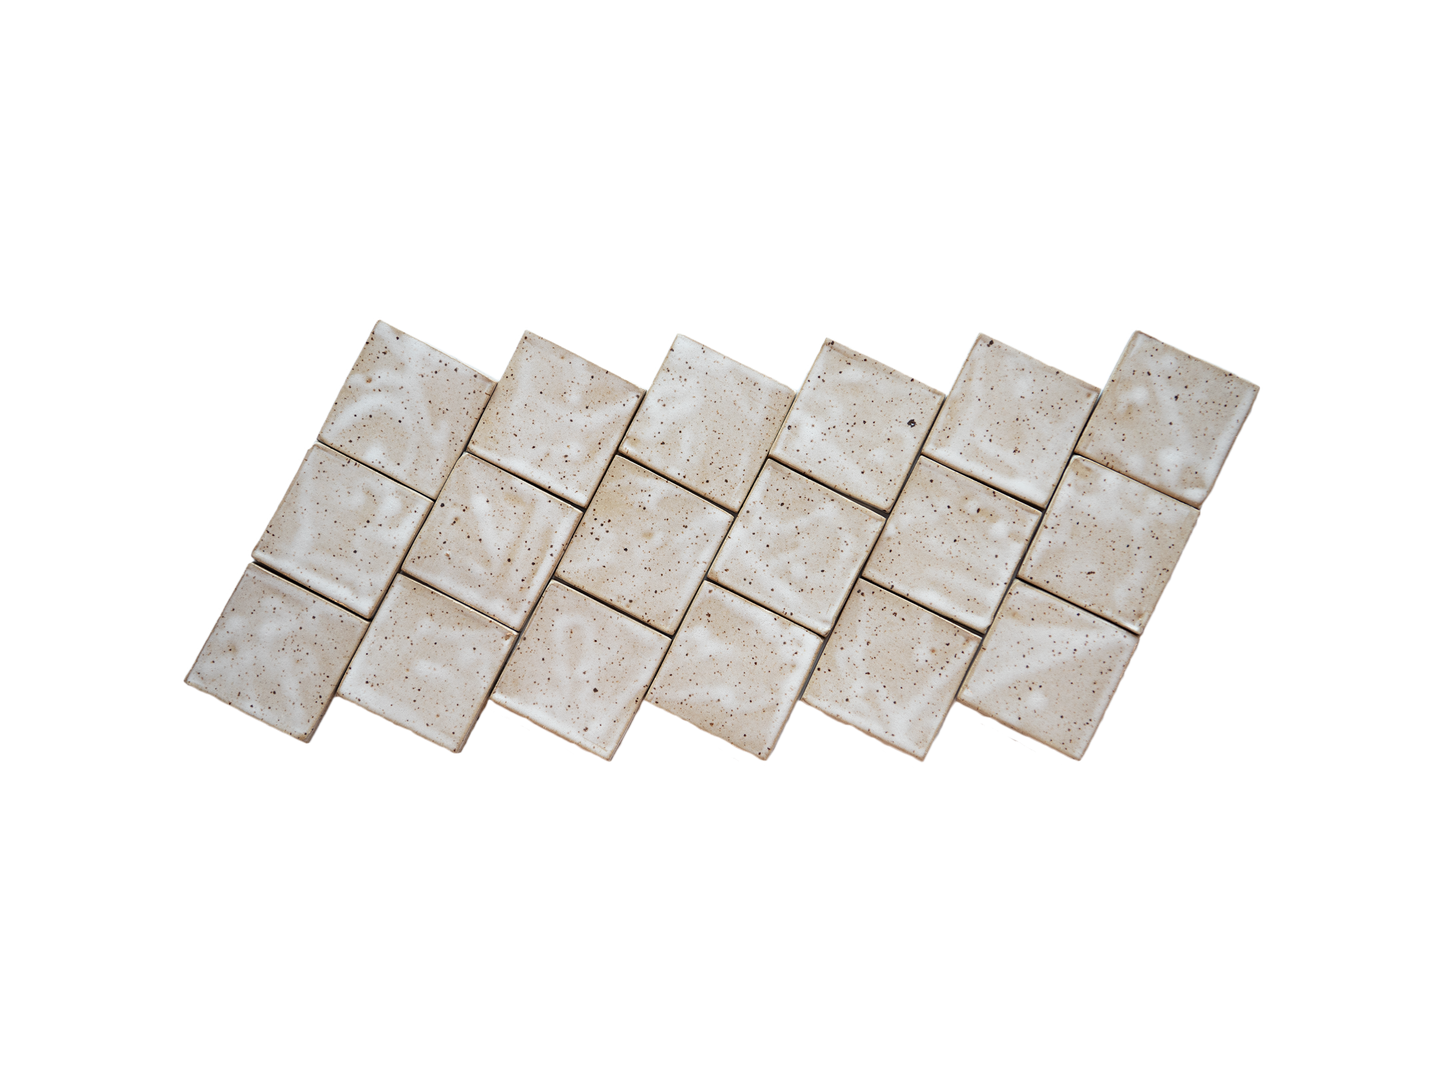 2.25" Square Tile